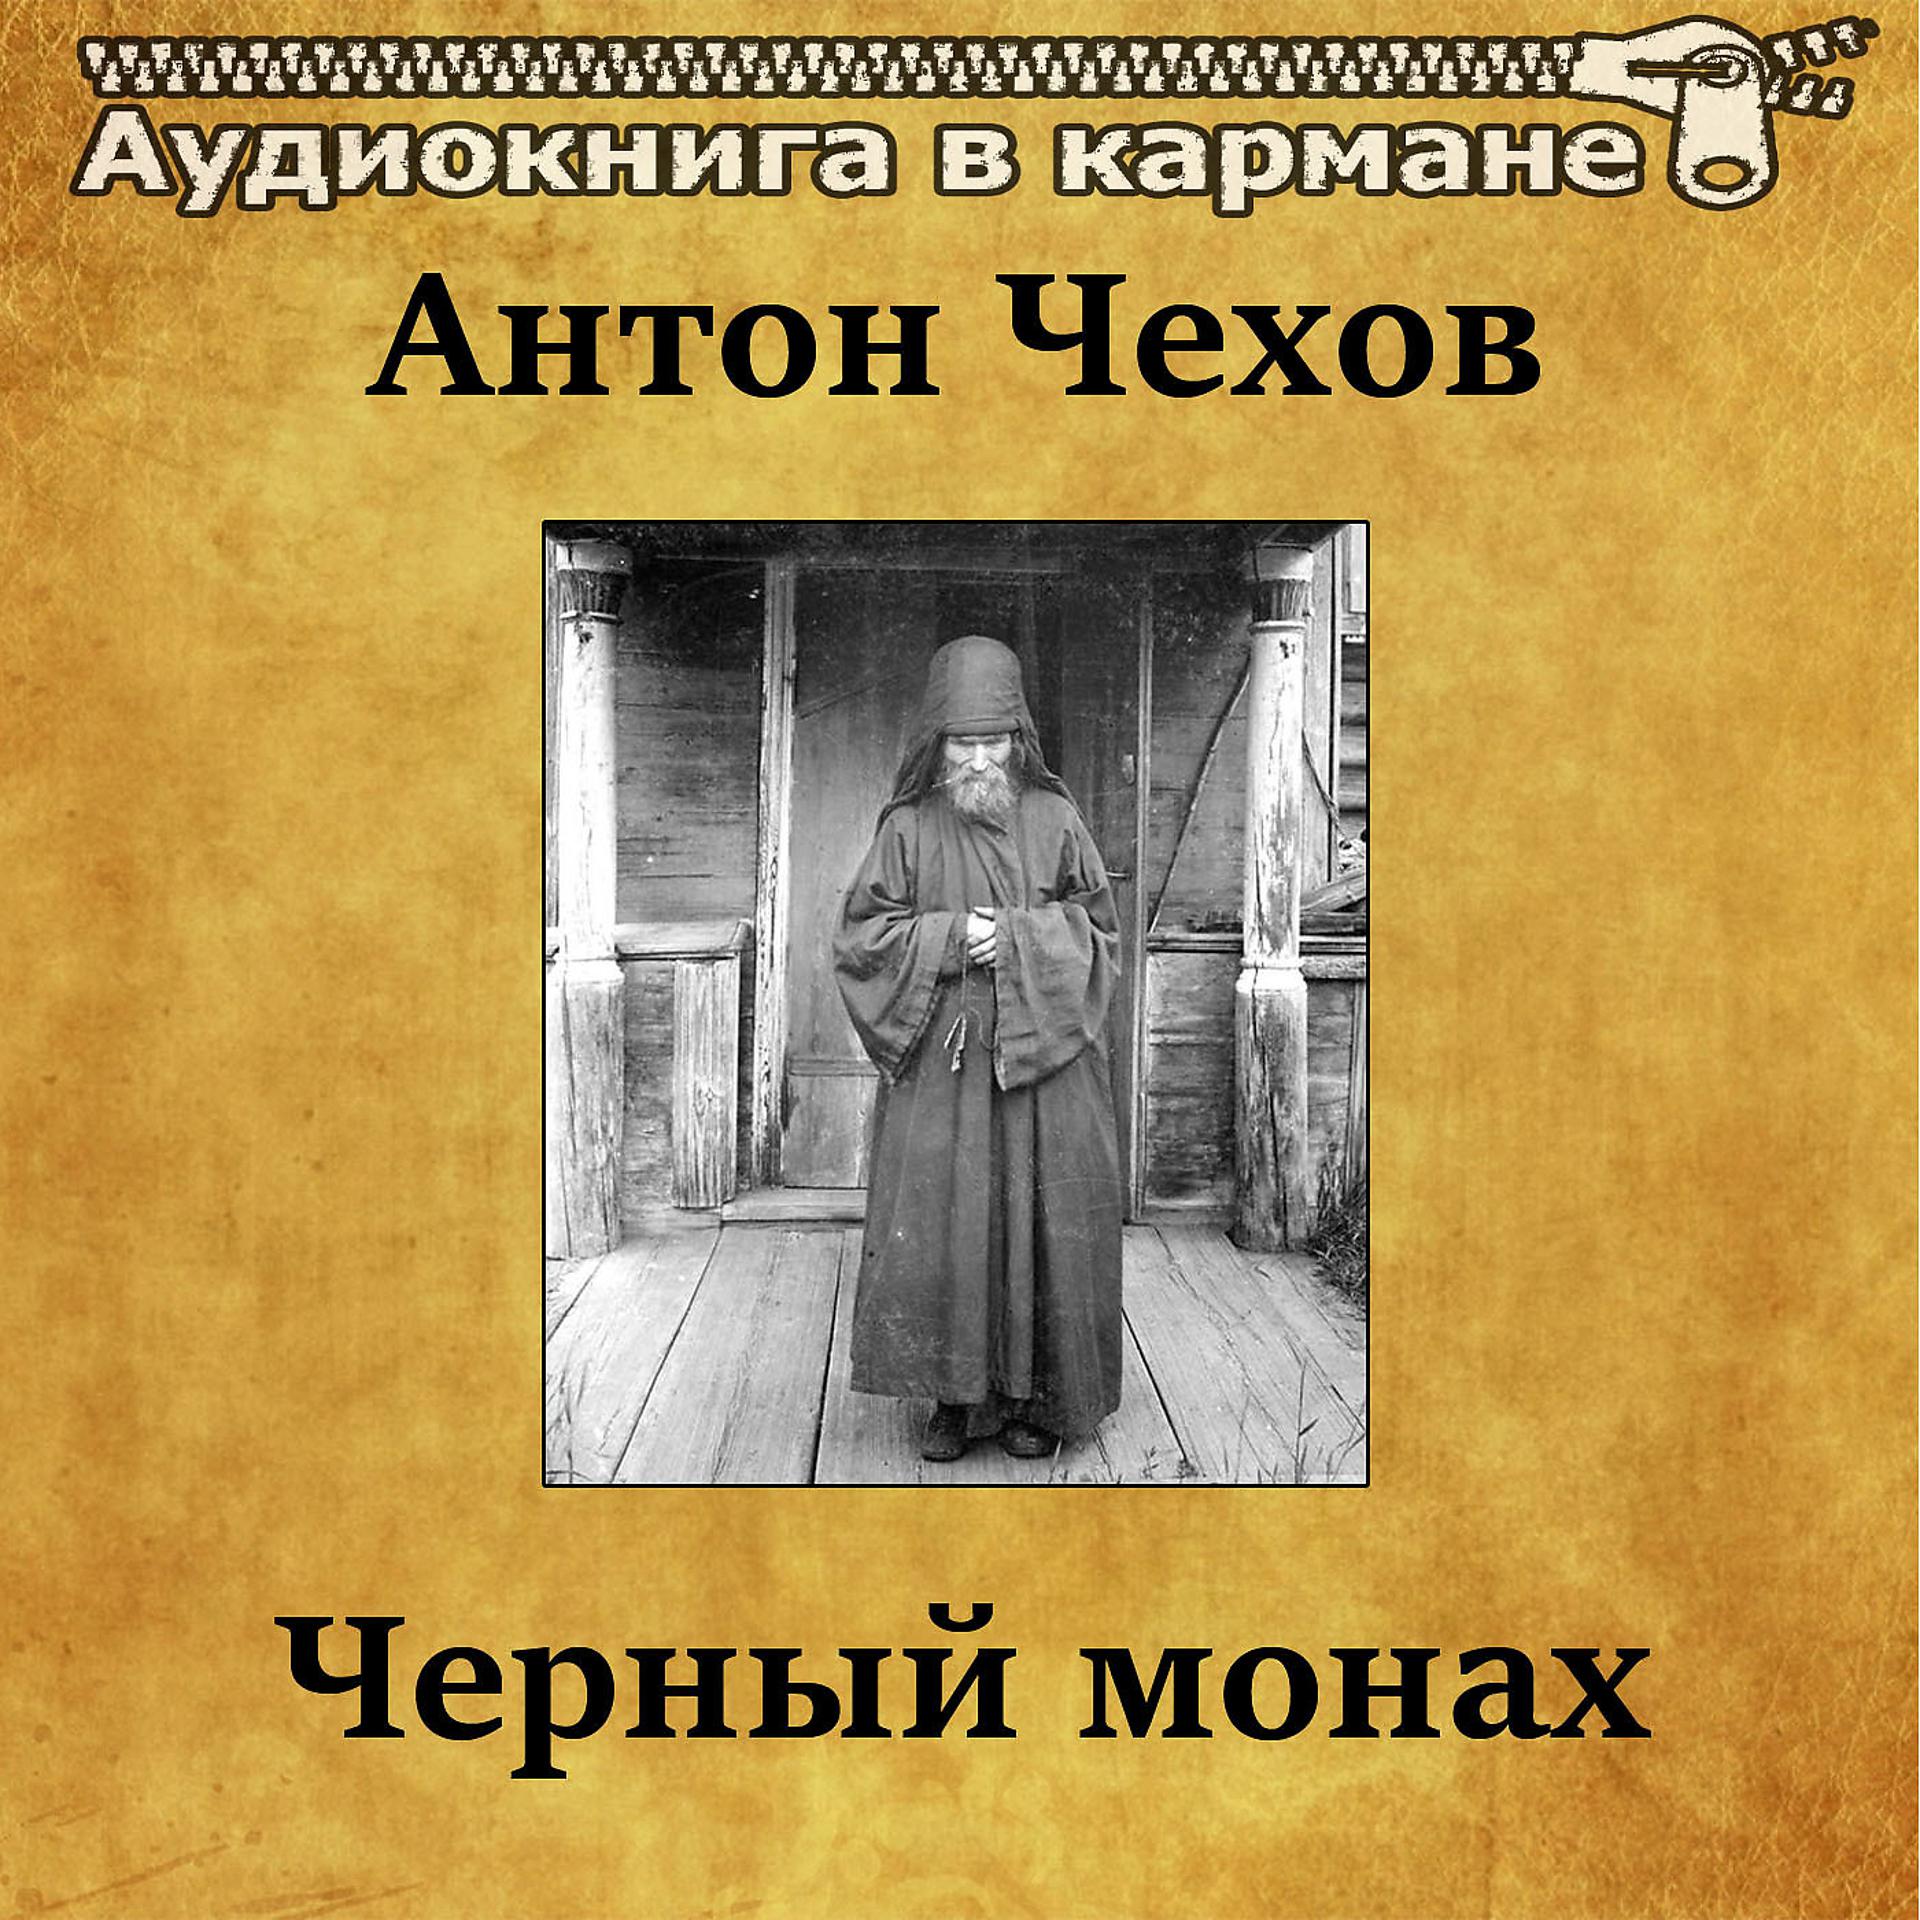 Чехов черный монах книга. Обложка книги Чехова черный монах.